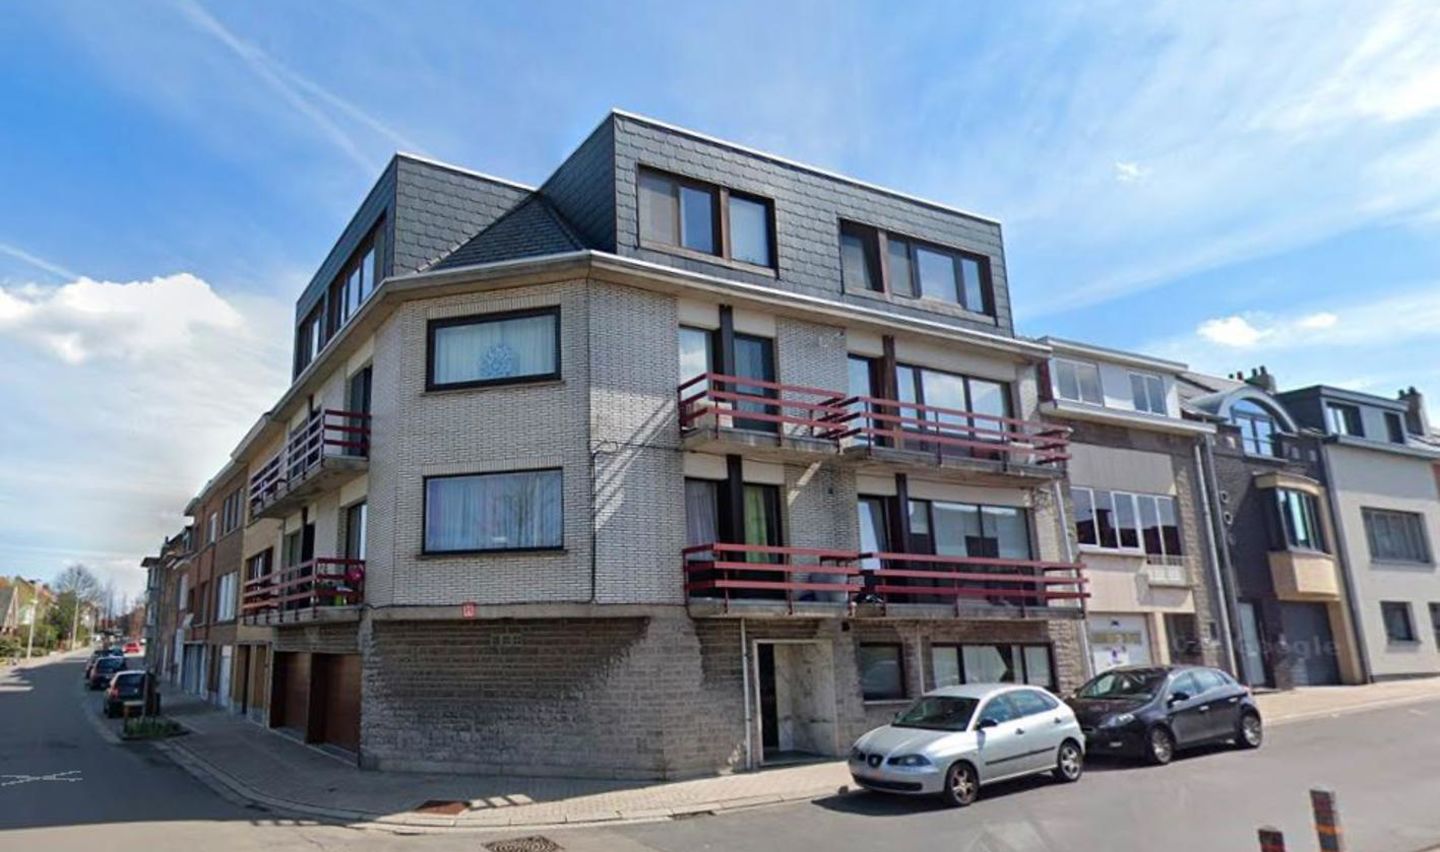 Appartement te huur in Sint-Pieters-Leeuw